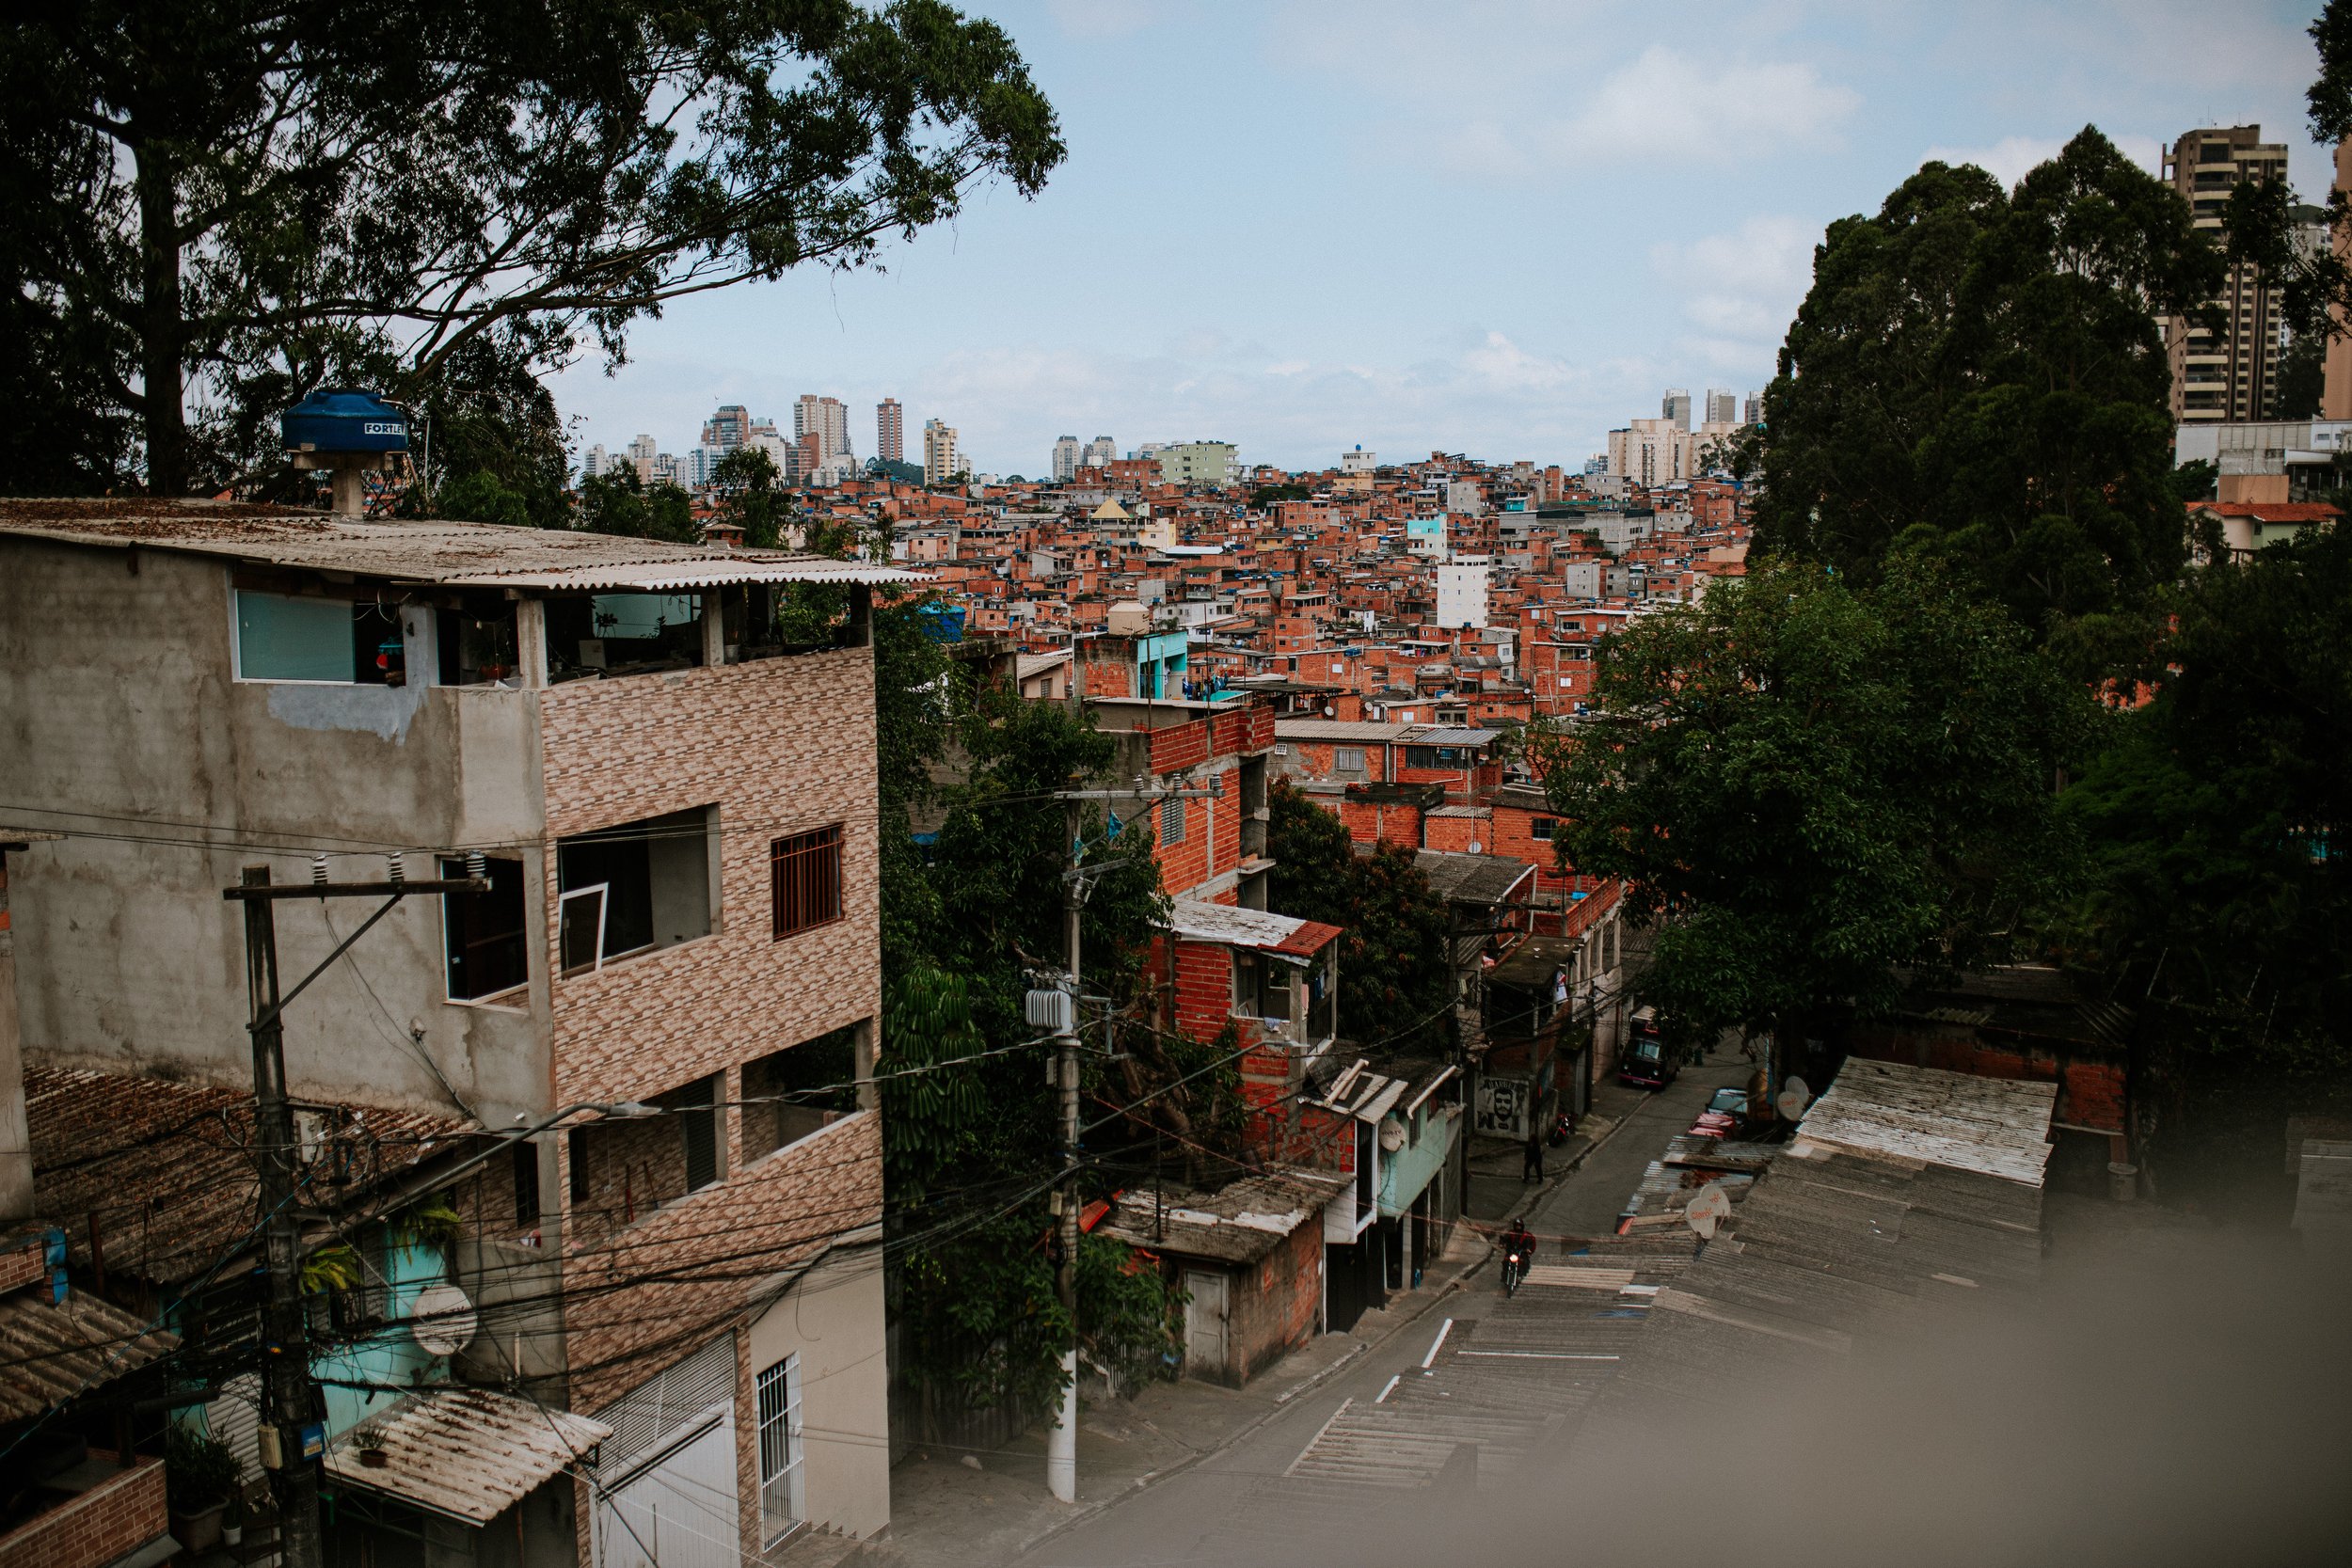 educaca-na-favela-de-paraisopolis-faculdade-na-favela-unicesumar-ricardo-franzen-12.jpg